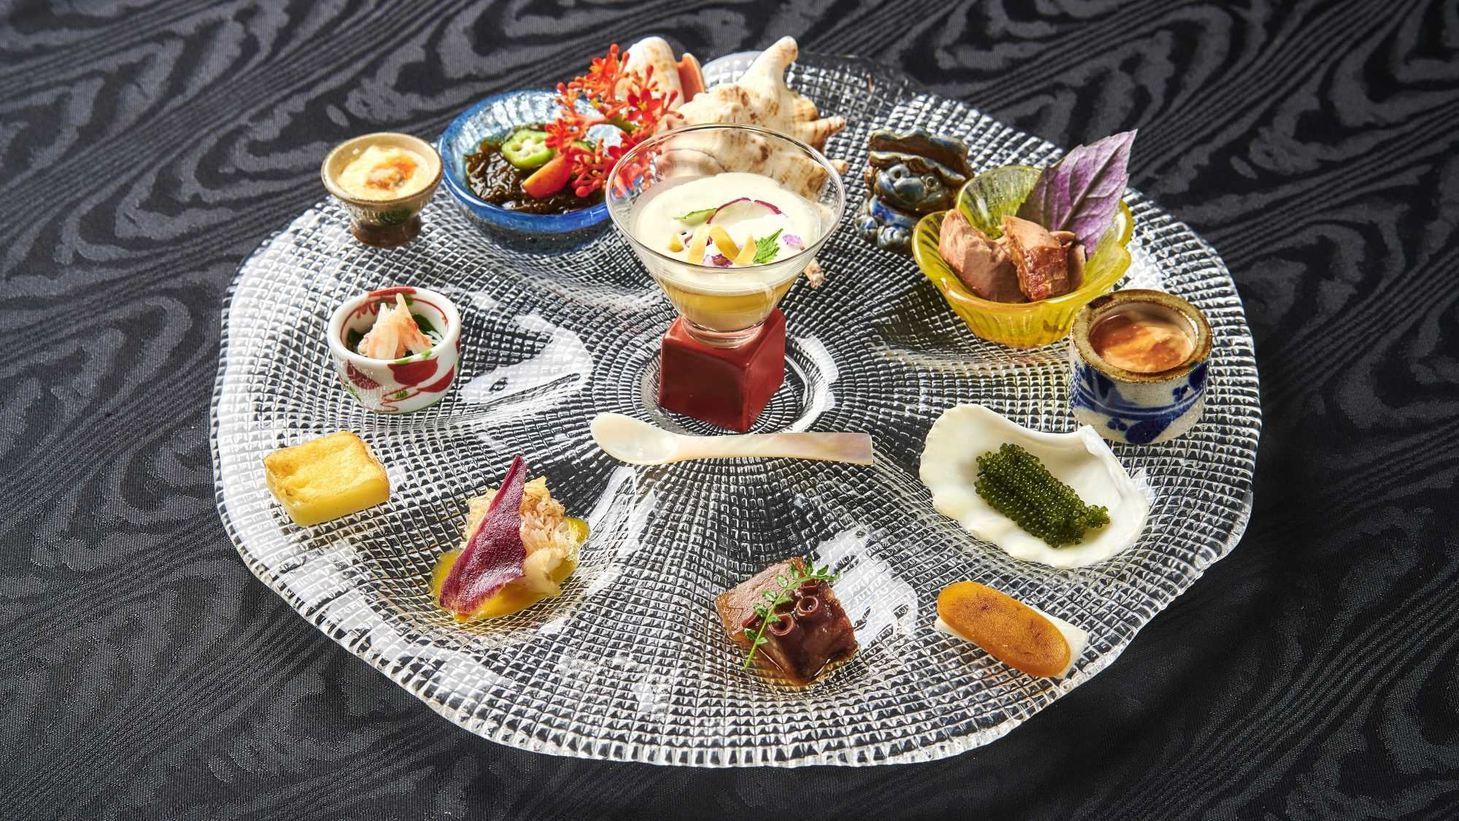 【リゾート内レストラン/マラルンガ和琉創作】会席料理をベースにした和琉創作料理をご提供しております。